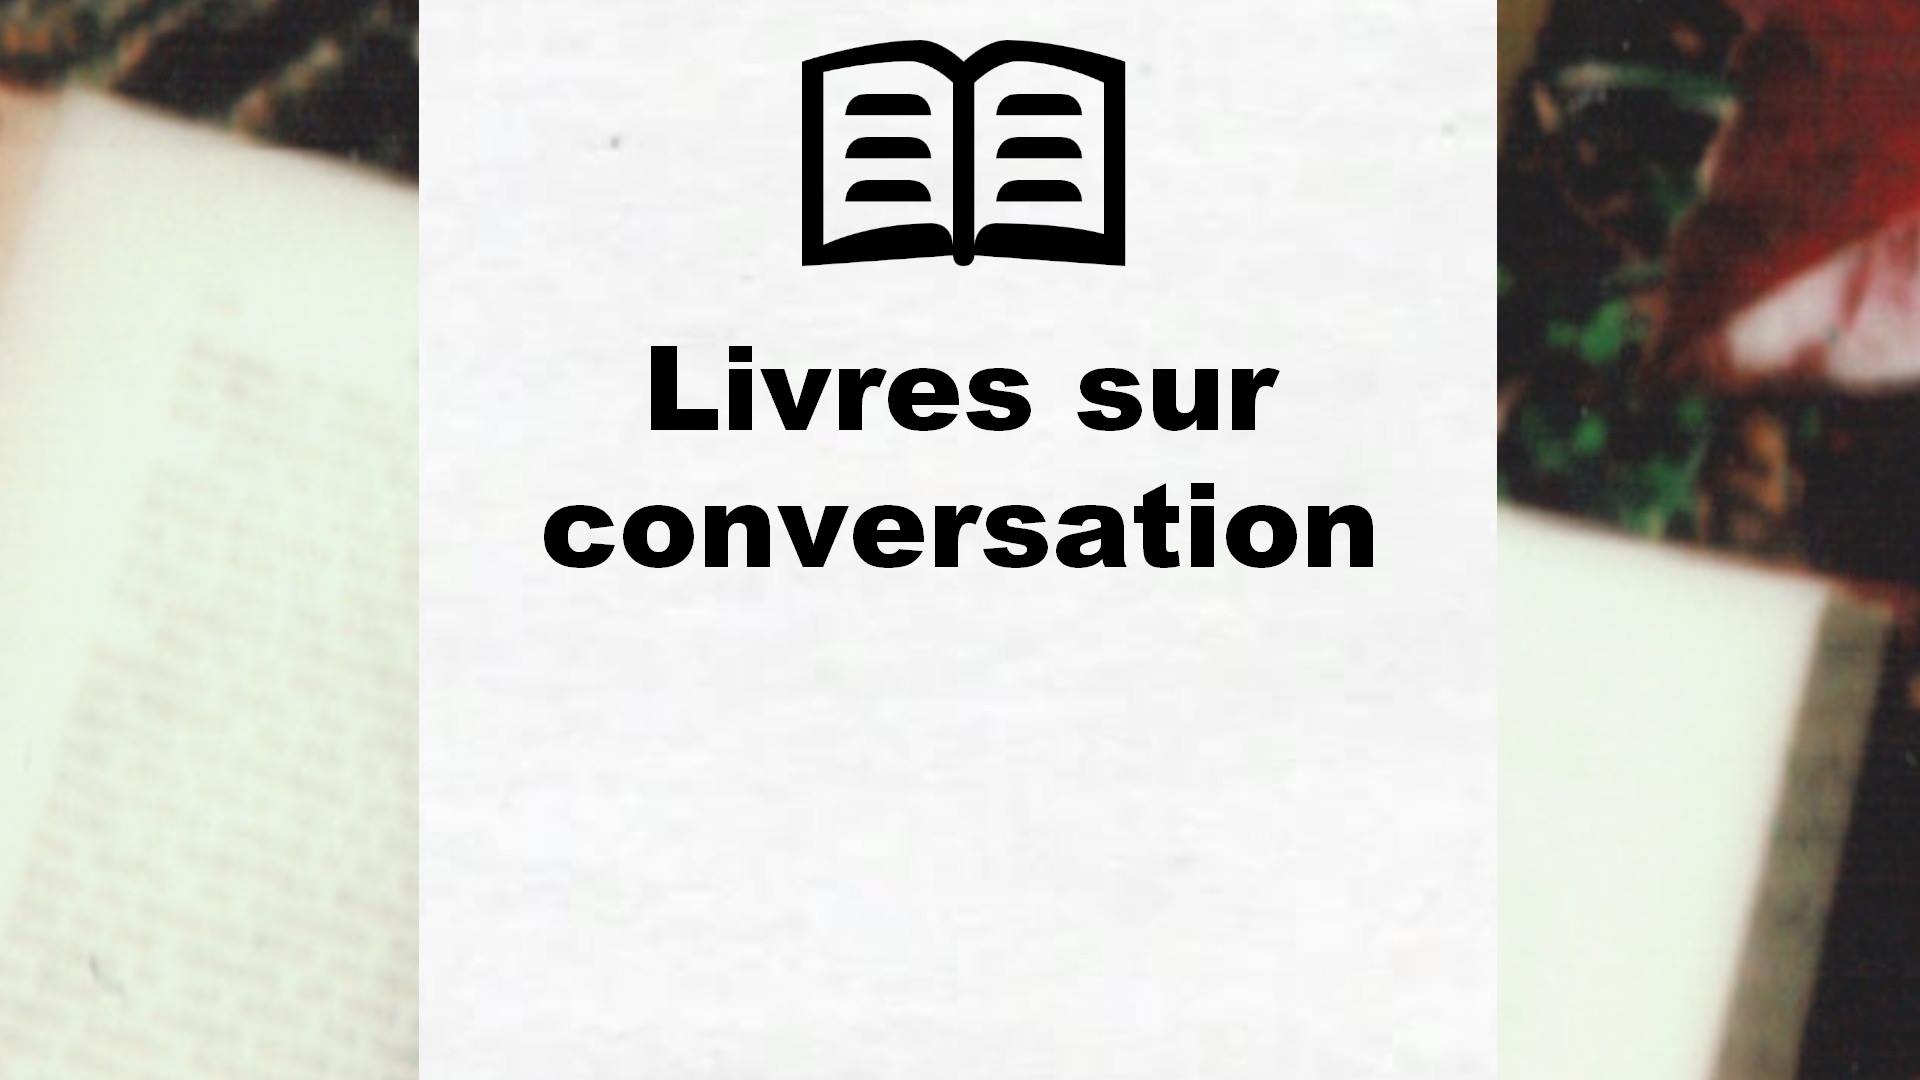 Livres sur conversation